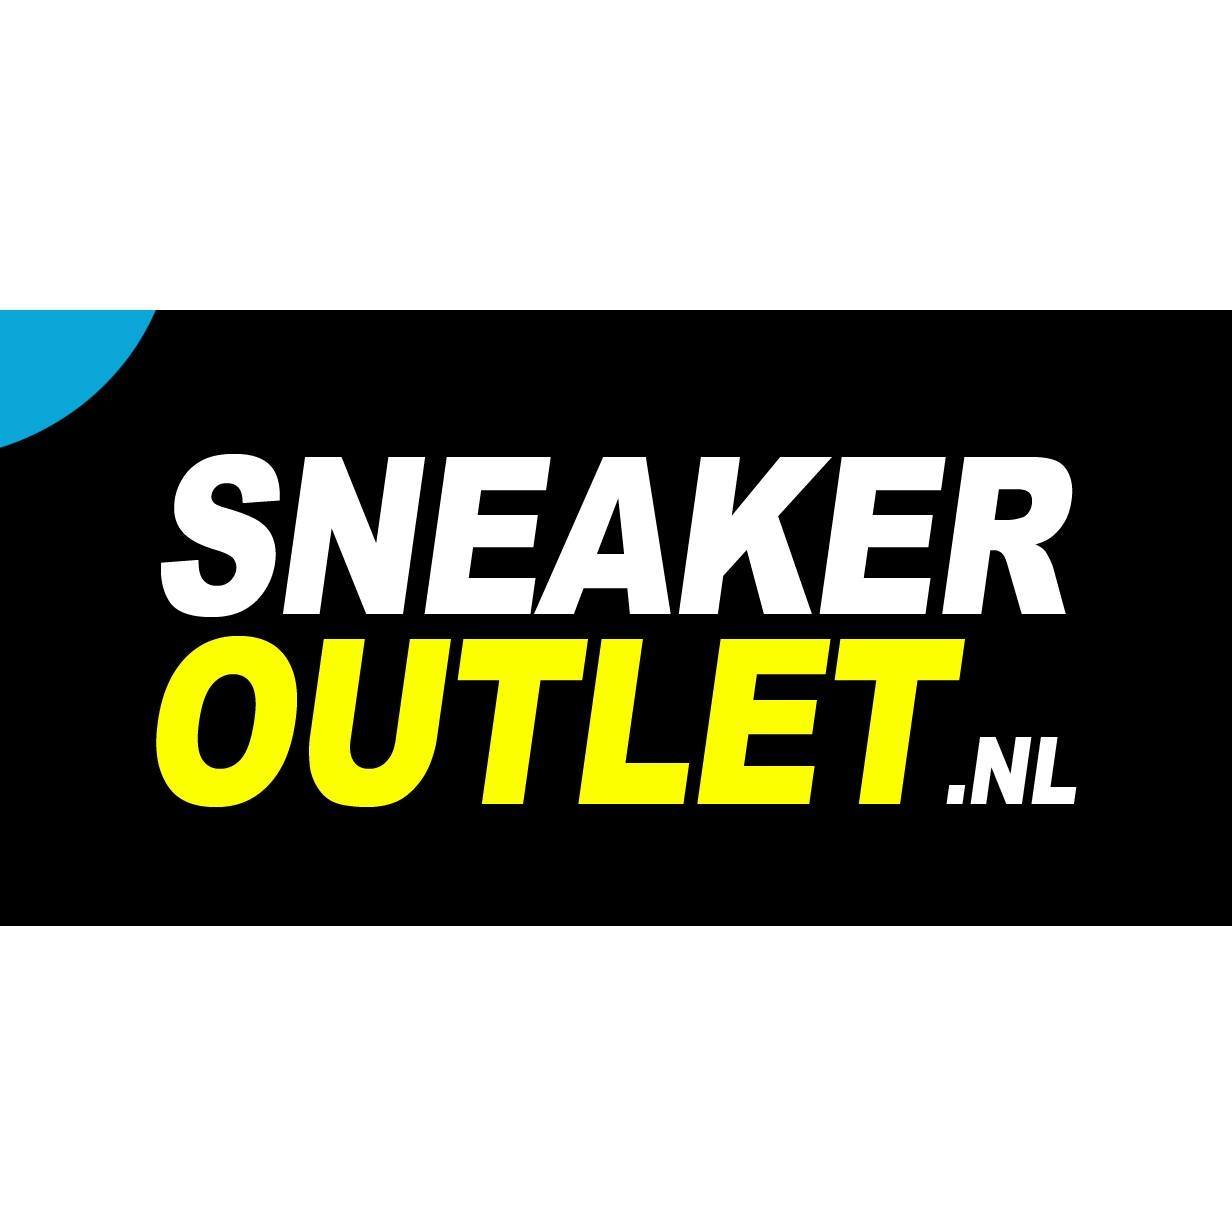 Sneakeroutlet.nl reviews, beoordelingen en ervaringen